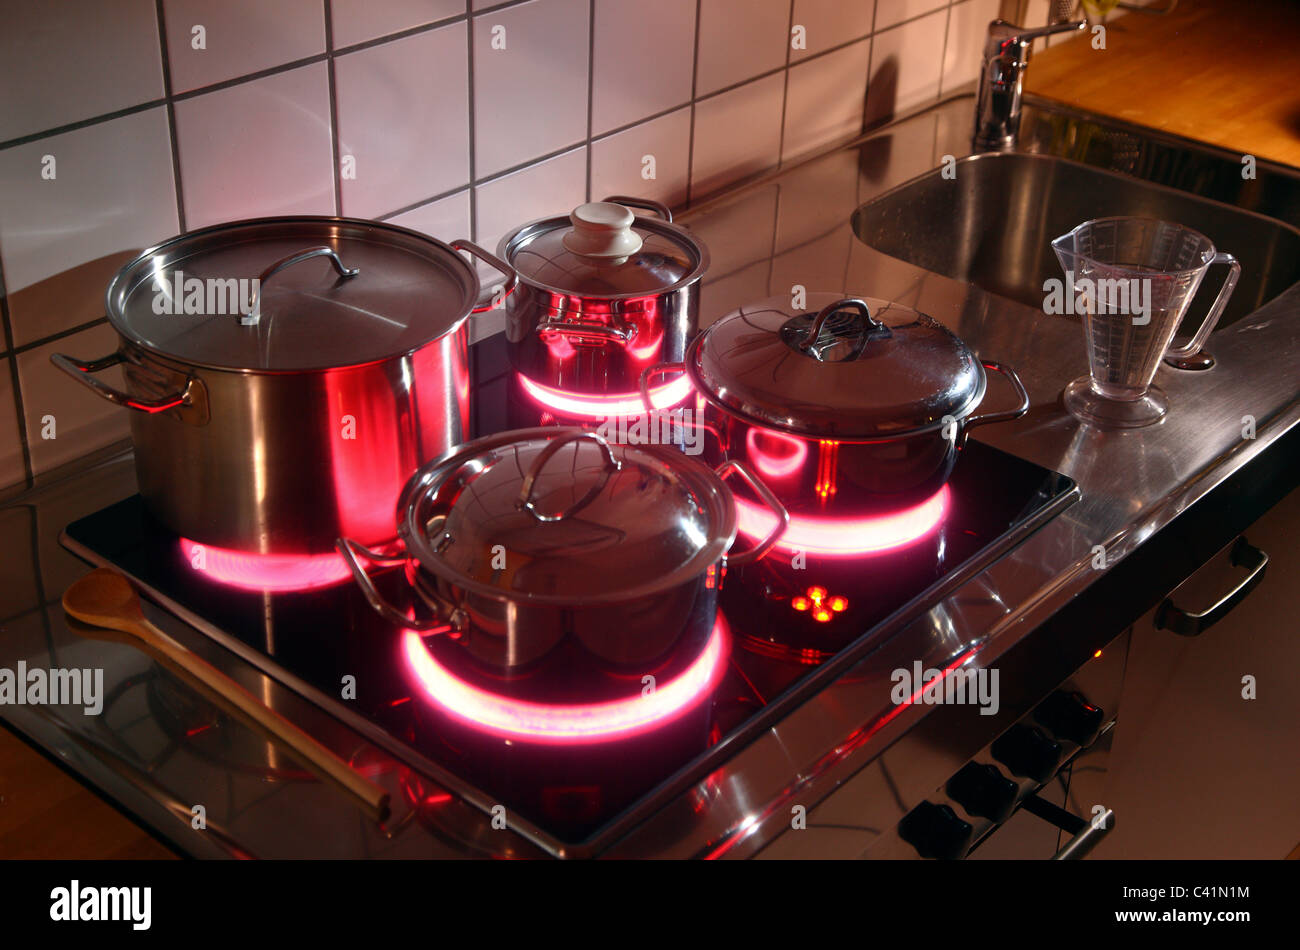 Cucina casalinga, pentole, realizzata in acciaio inossidabile, su di un vetro caldo-cottura ceramica anello. red hot incandescente. Foto Stock